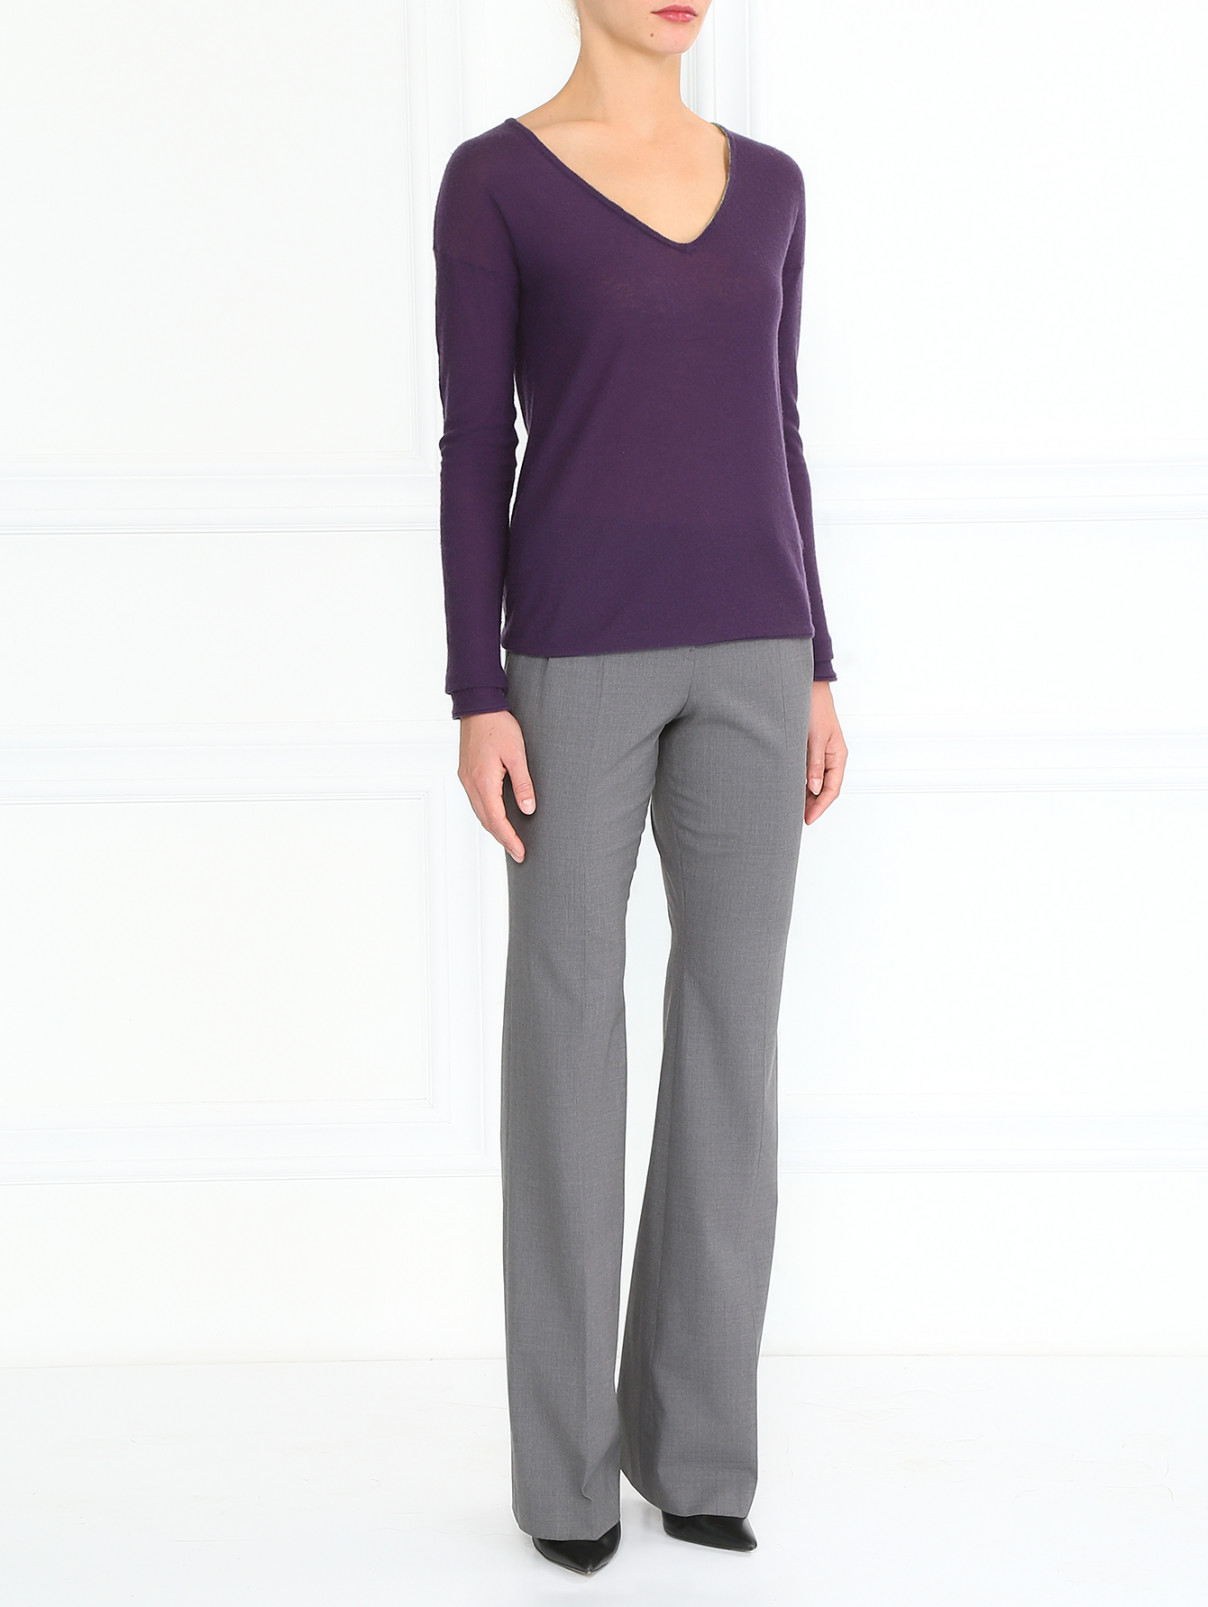 Шерстяные брюки с боковыми карманами Jil Sander  –  Модель Общий вид  – Цвет:  Серый